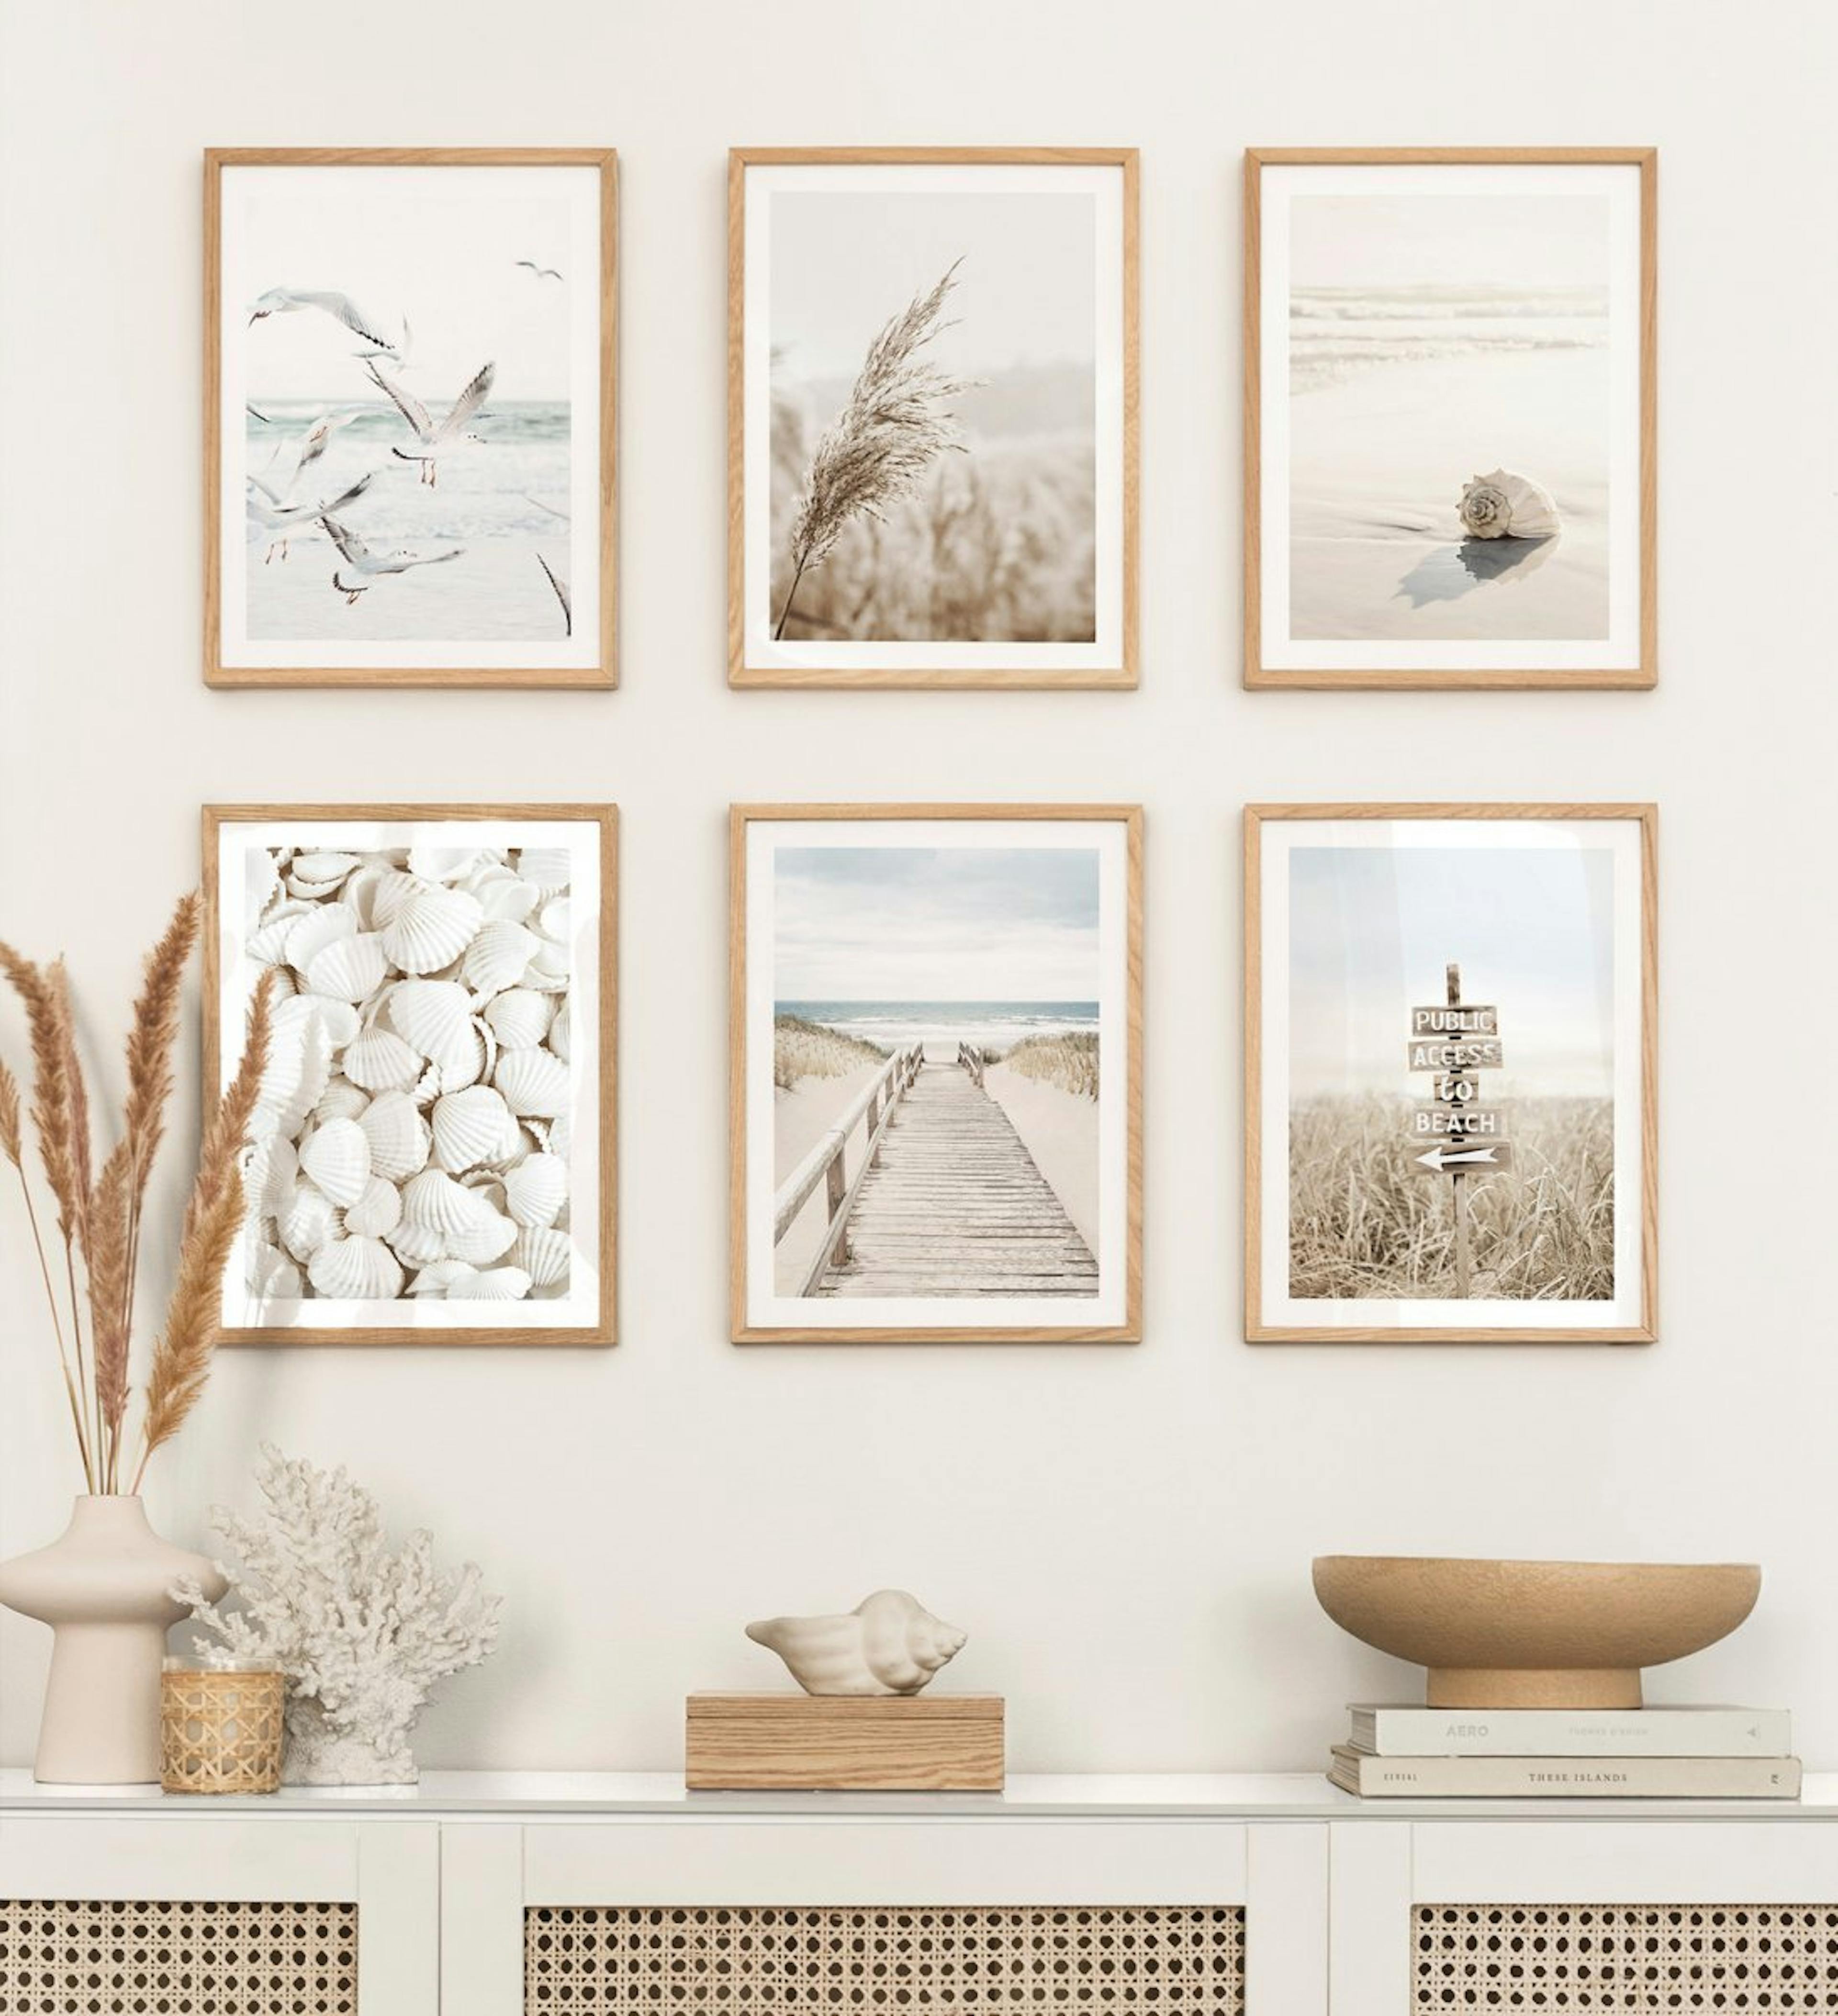 Sereno muro a galleria in beige a tema spiaggia con cornici in rovere per il soggiorno